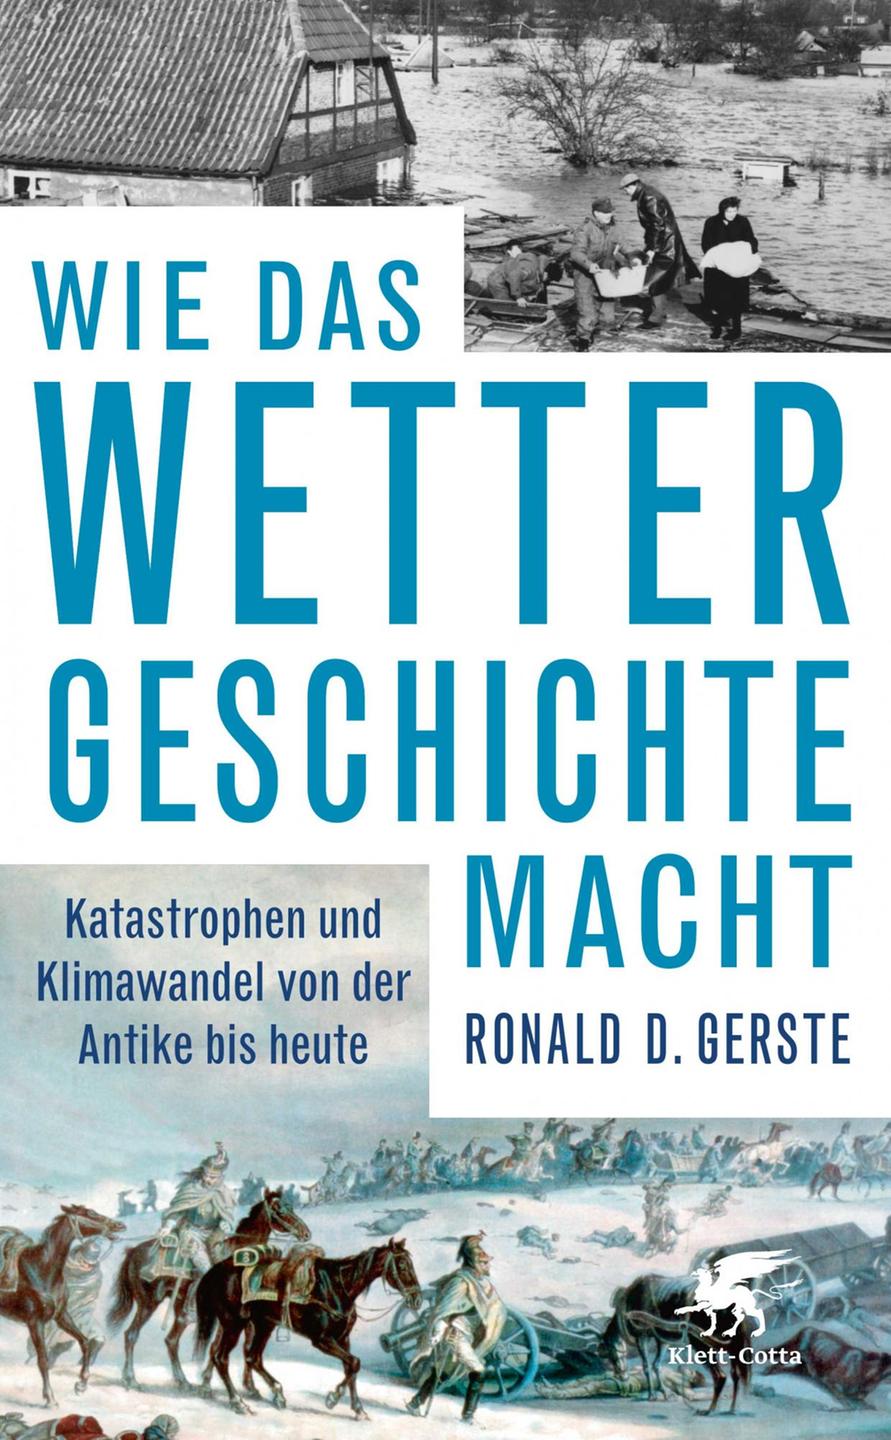 Cover: Ronald D. Gerste "Wie das Wetter Geschichte macht"